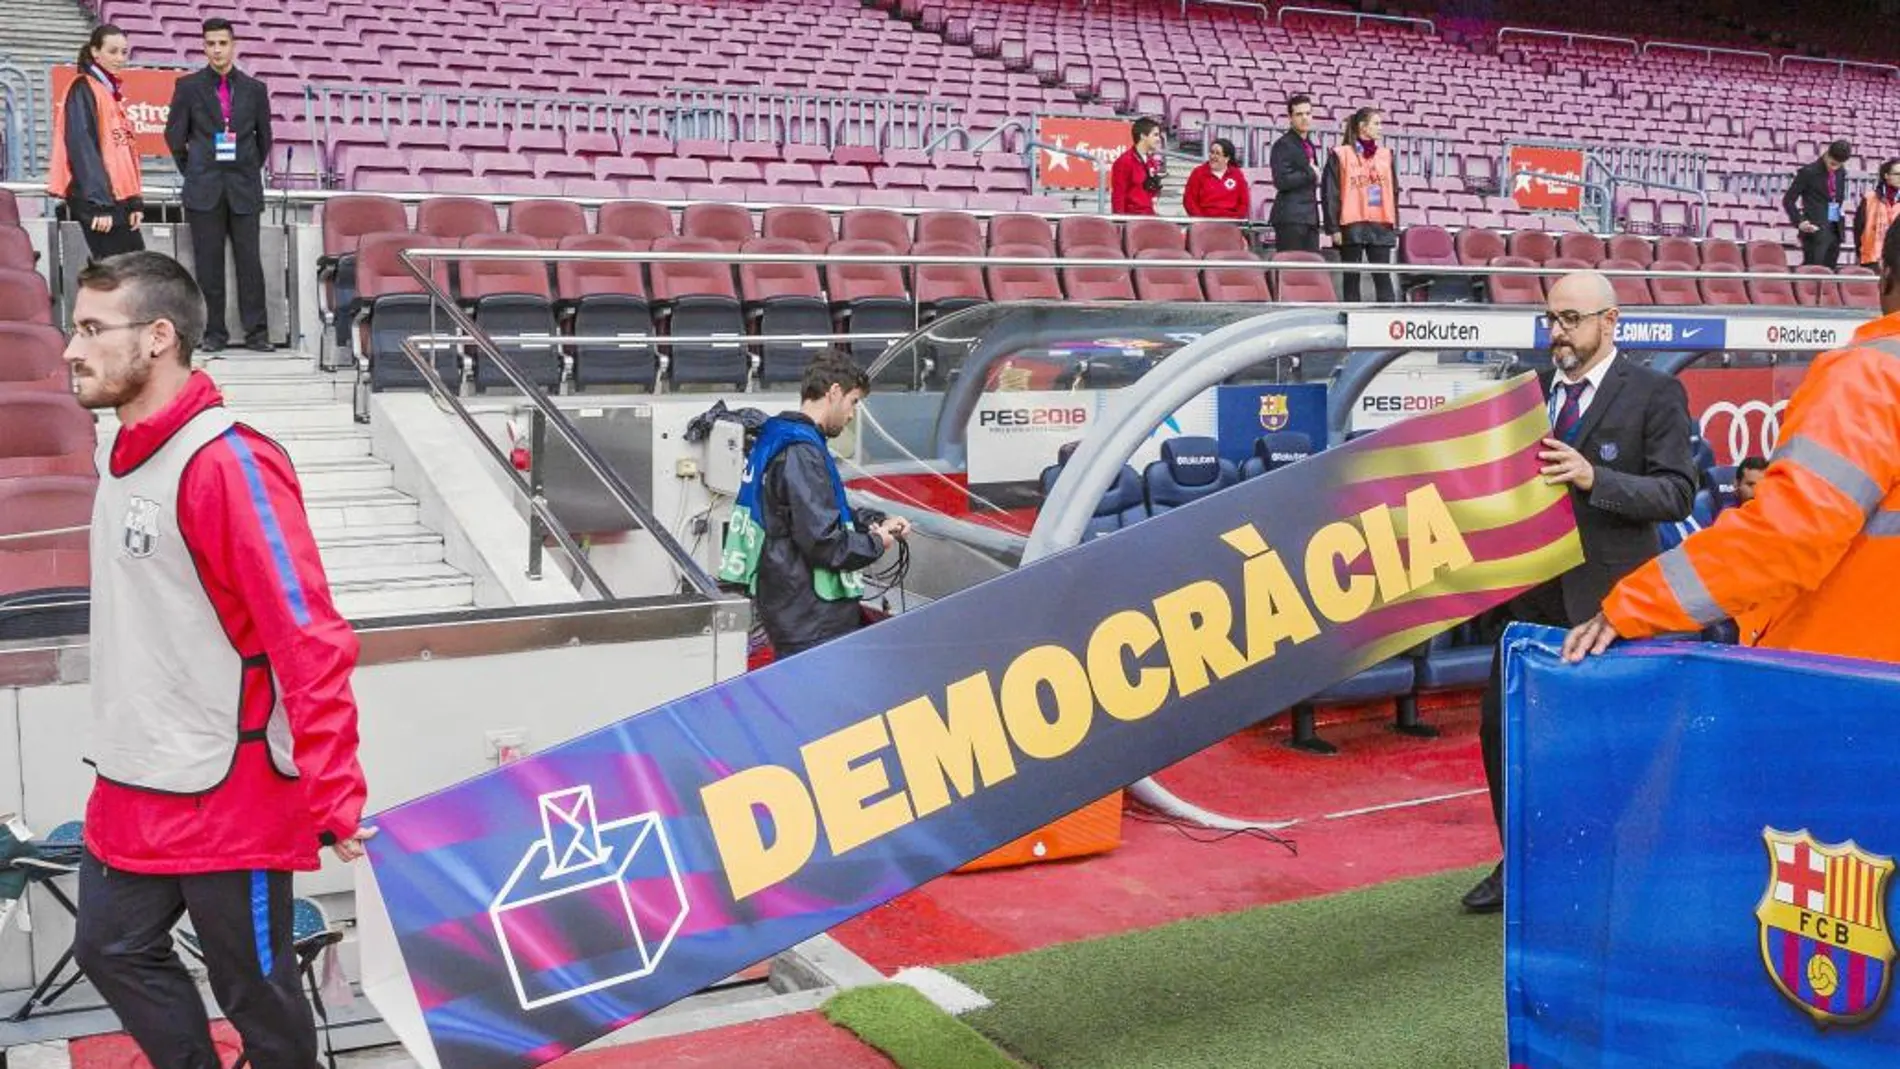 Cara a cara: ¿Debió suspenderse el partido en el Camp Nou?